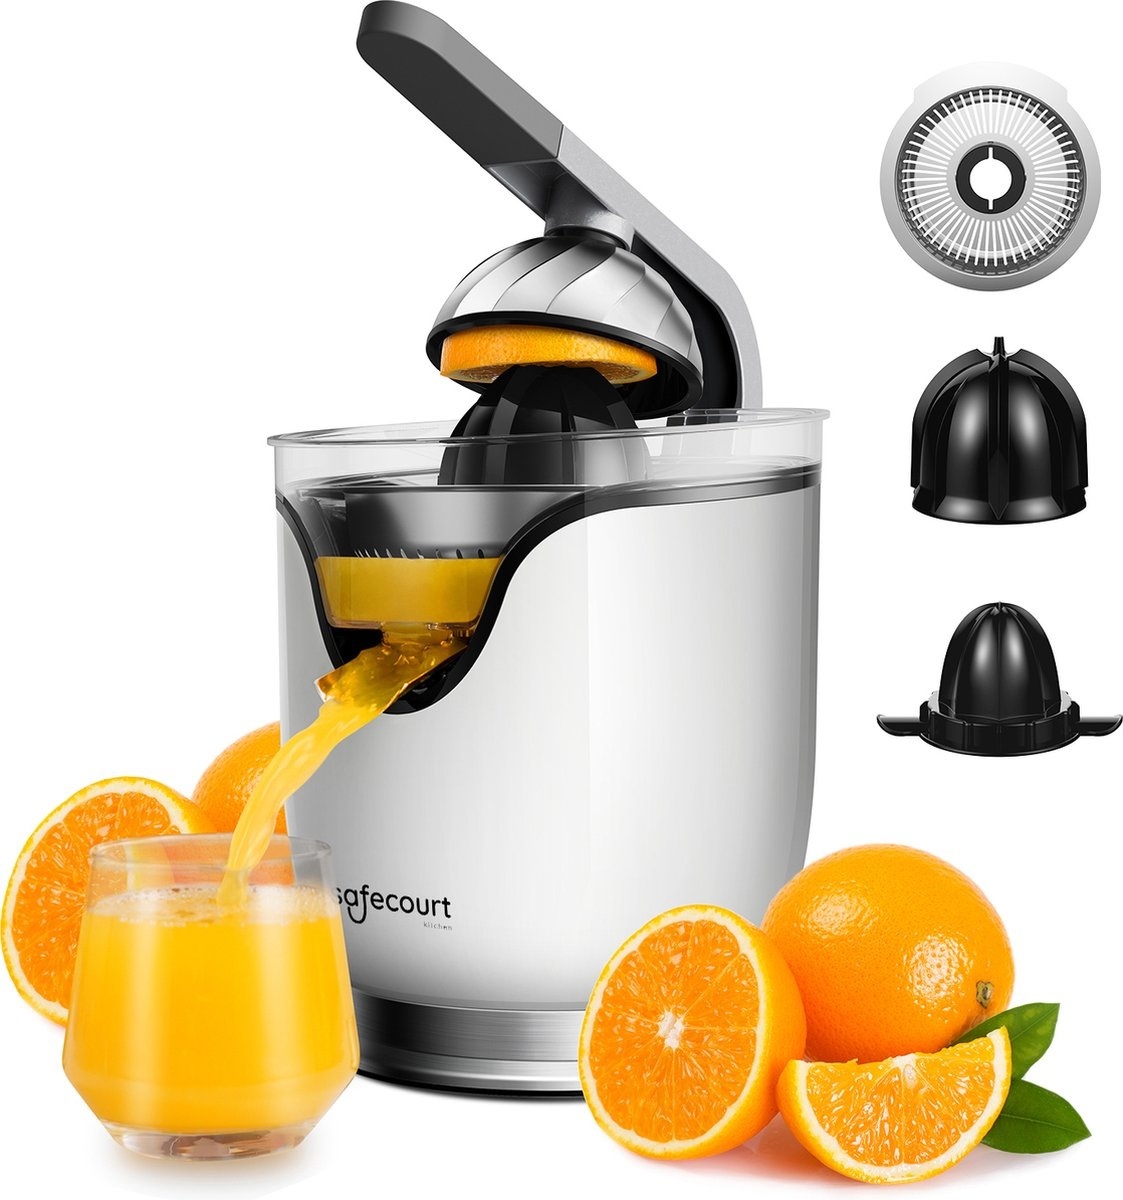 Safecourt Kitchen Elektrische Zitruspresse - Effiziente Orangenpresse - Leistungsstark und schnell - Weiß